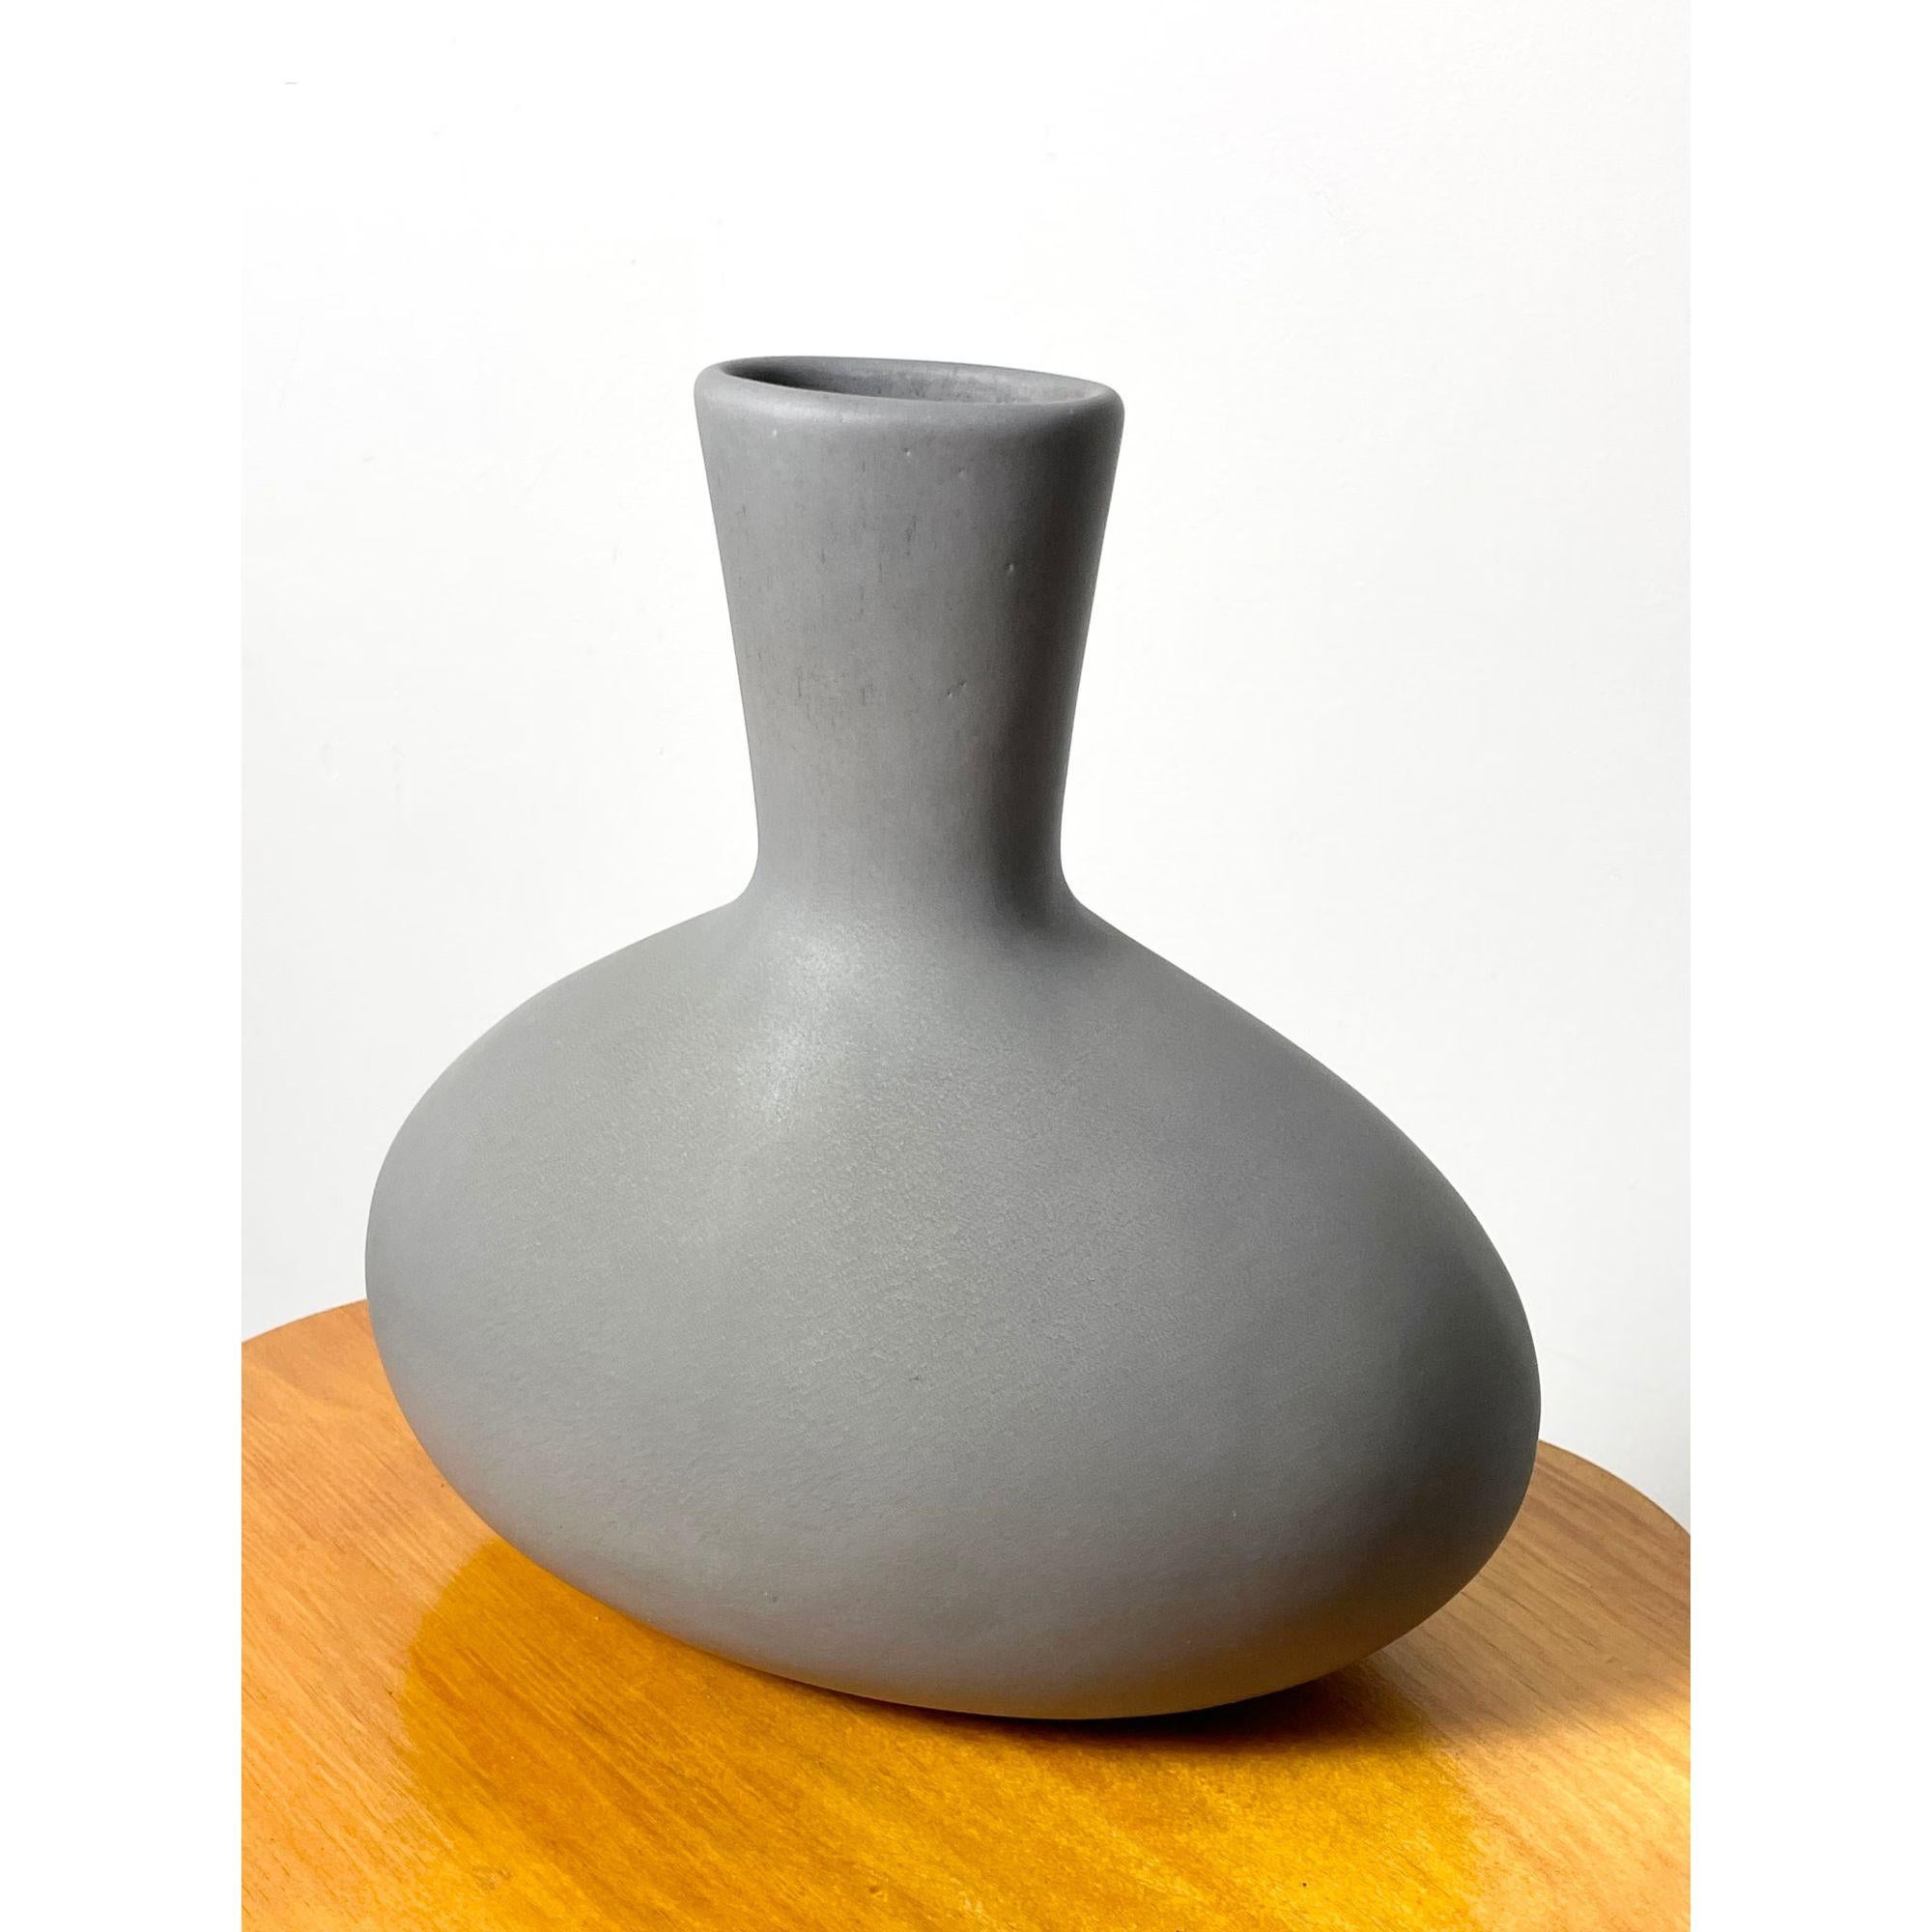 Rare Malcolm Leland Ceramic Egg Shaped Vase Mid Century Modern Architectural Pottery 1950s

Vase modèle 19
Forme ovoïde en glaçure grise mate
Signé au verso

Informations supplémentaires :
Matériaux : Céramique
Dimensions : 5.5